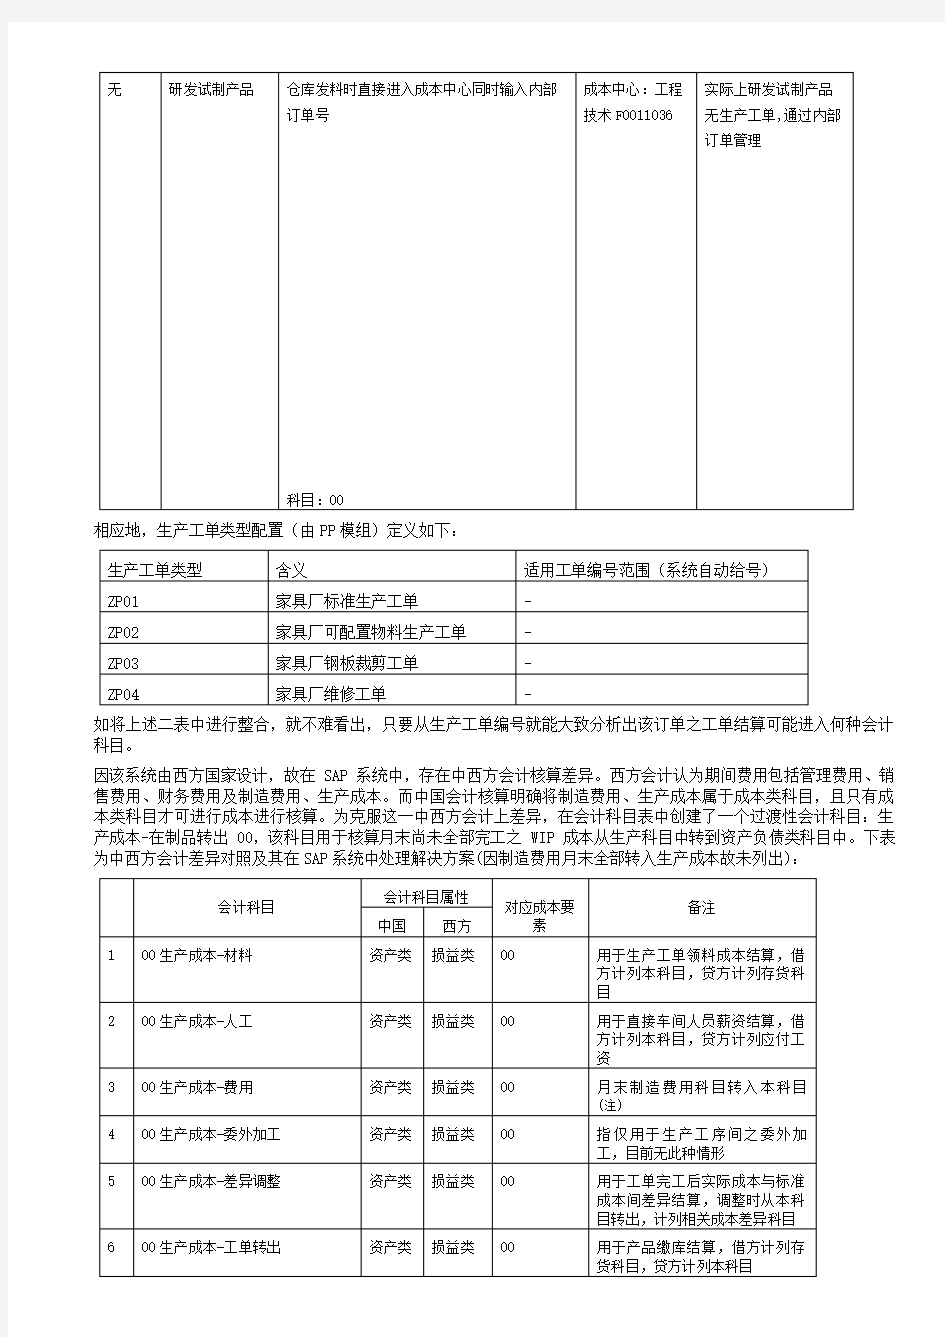 上海家具公司SAP实施CO工单结算流程